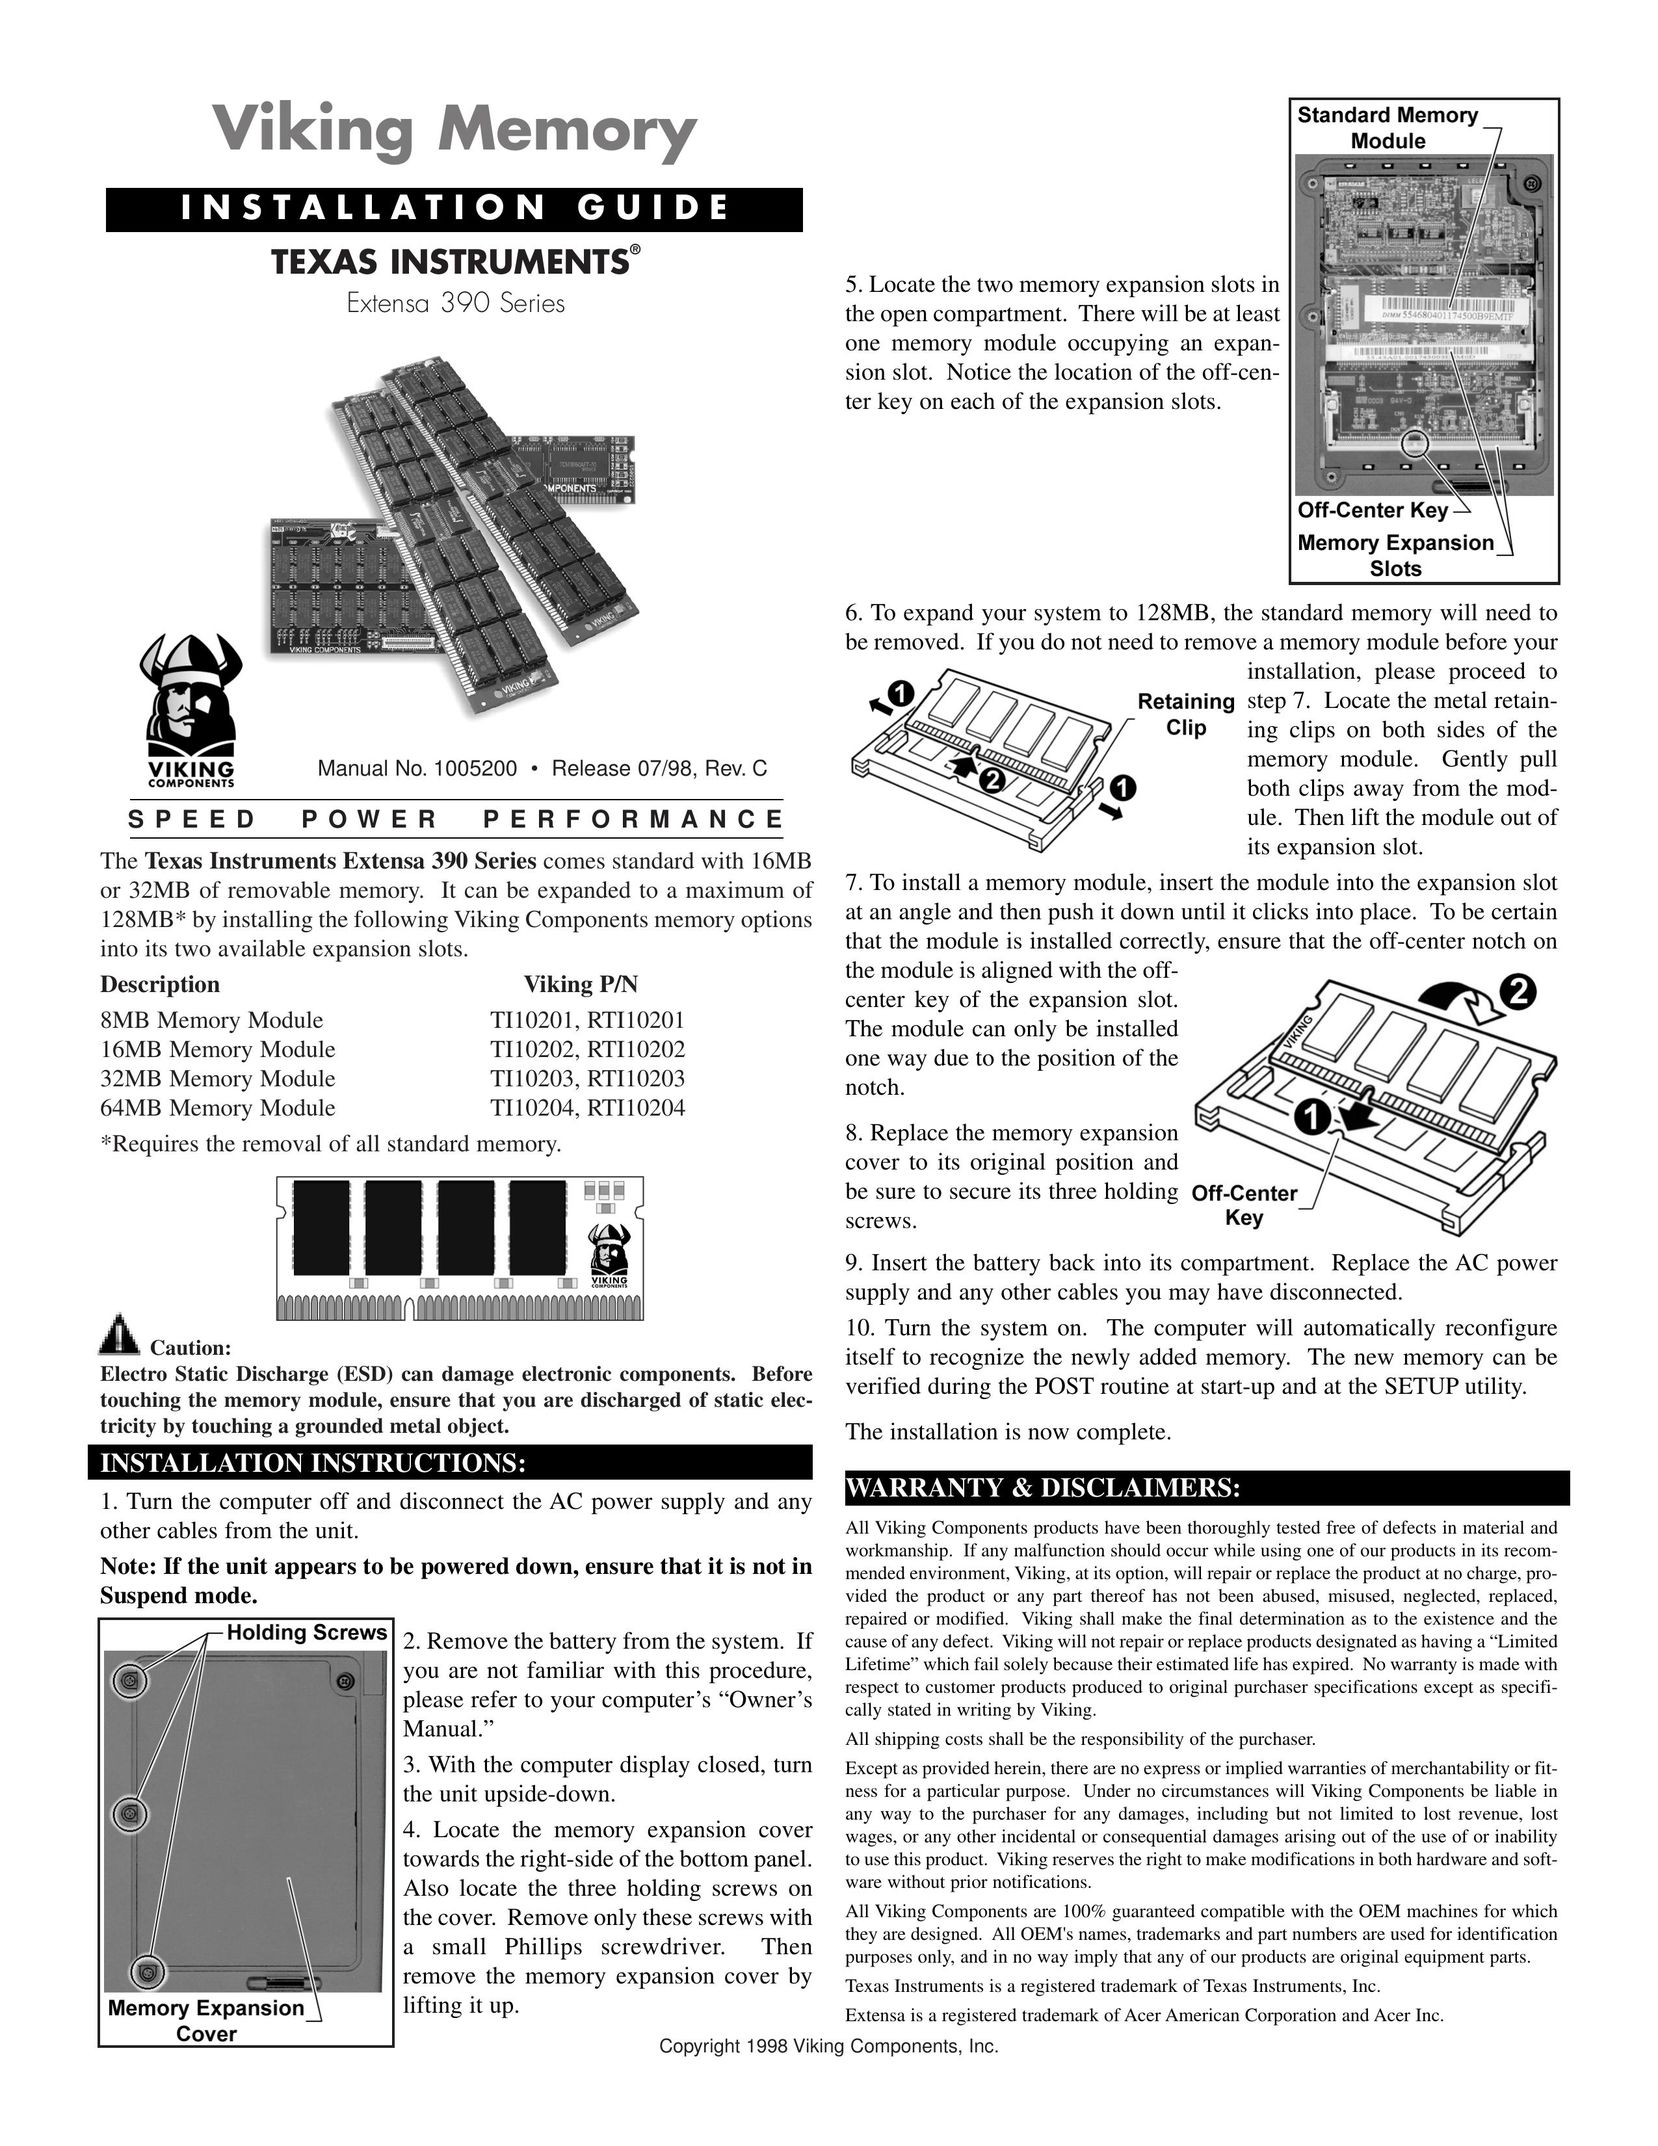 Viking TI10201 Computer Hardware User Manual